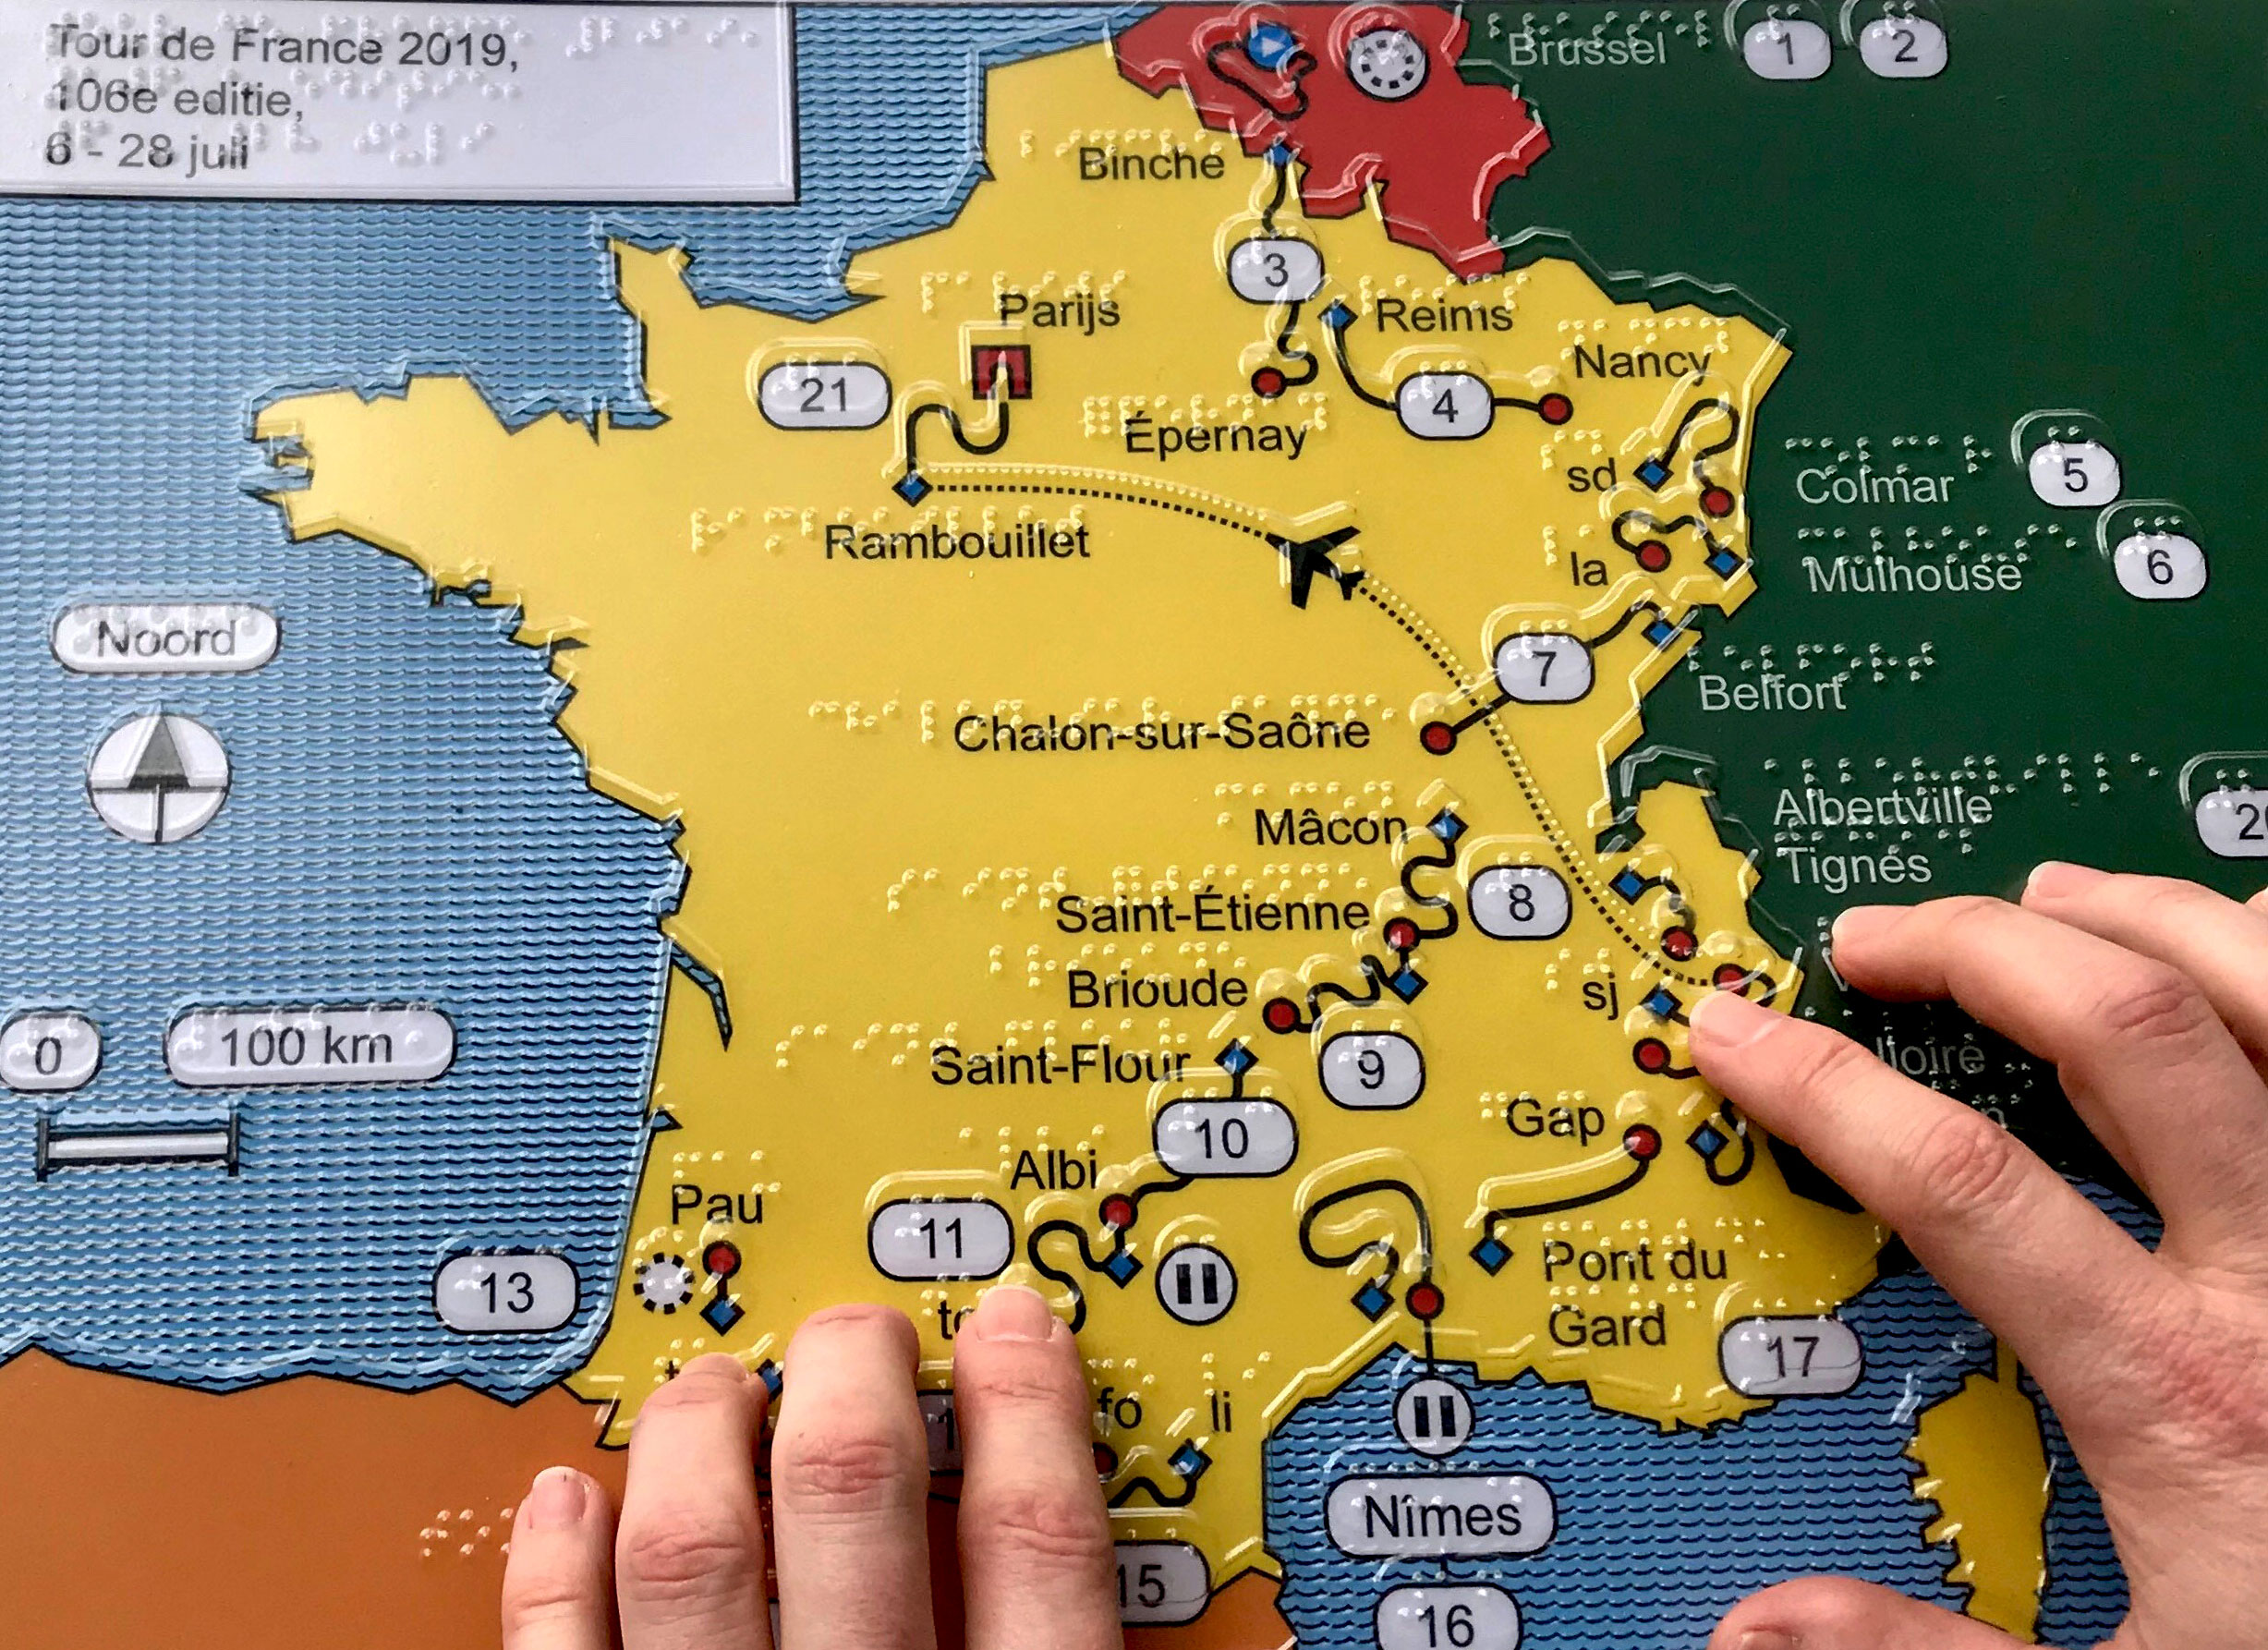 voelbare overzichtskaart Tour de France met handen